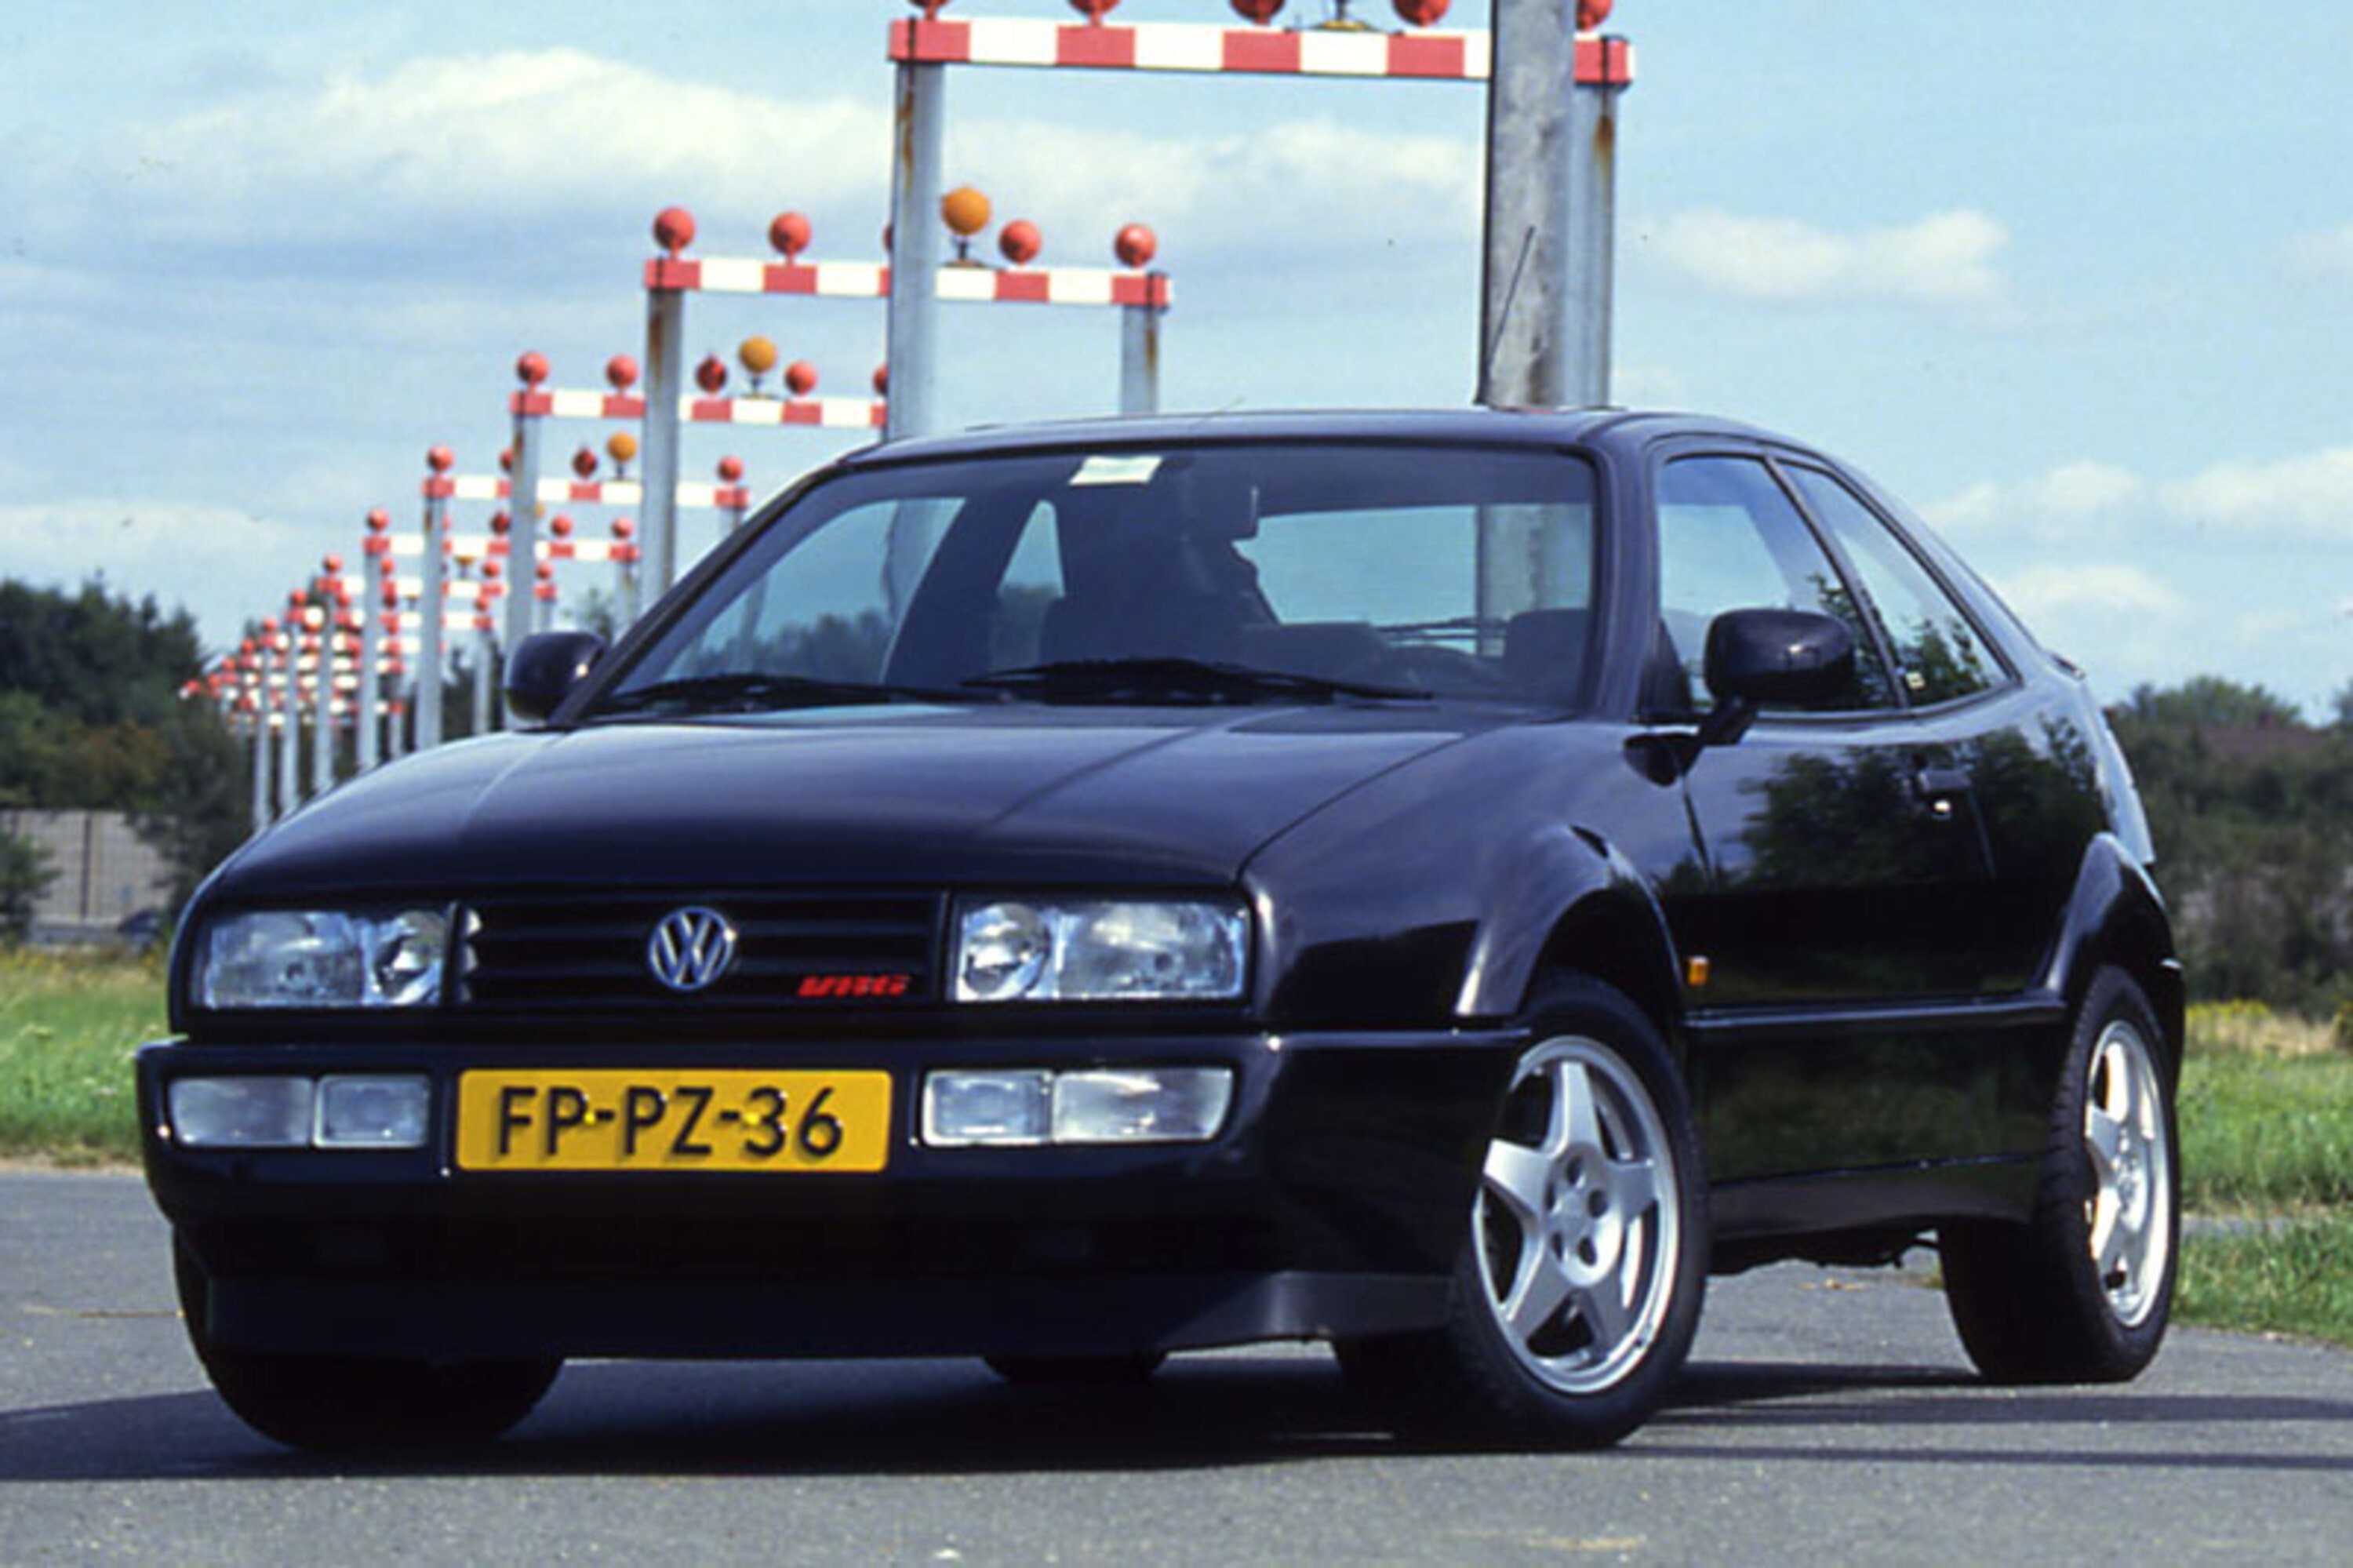 Volkswagen Corrado (1988-95)